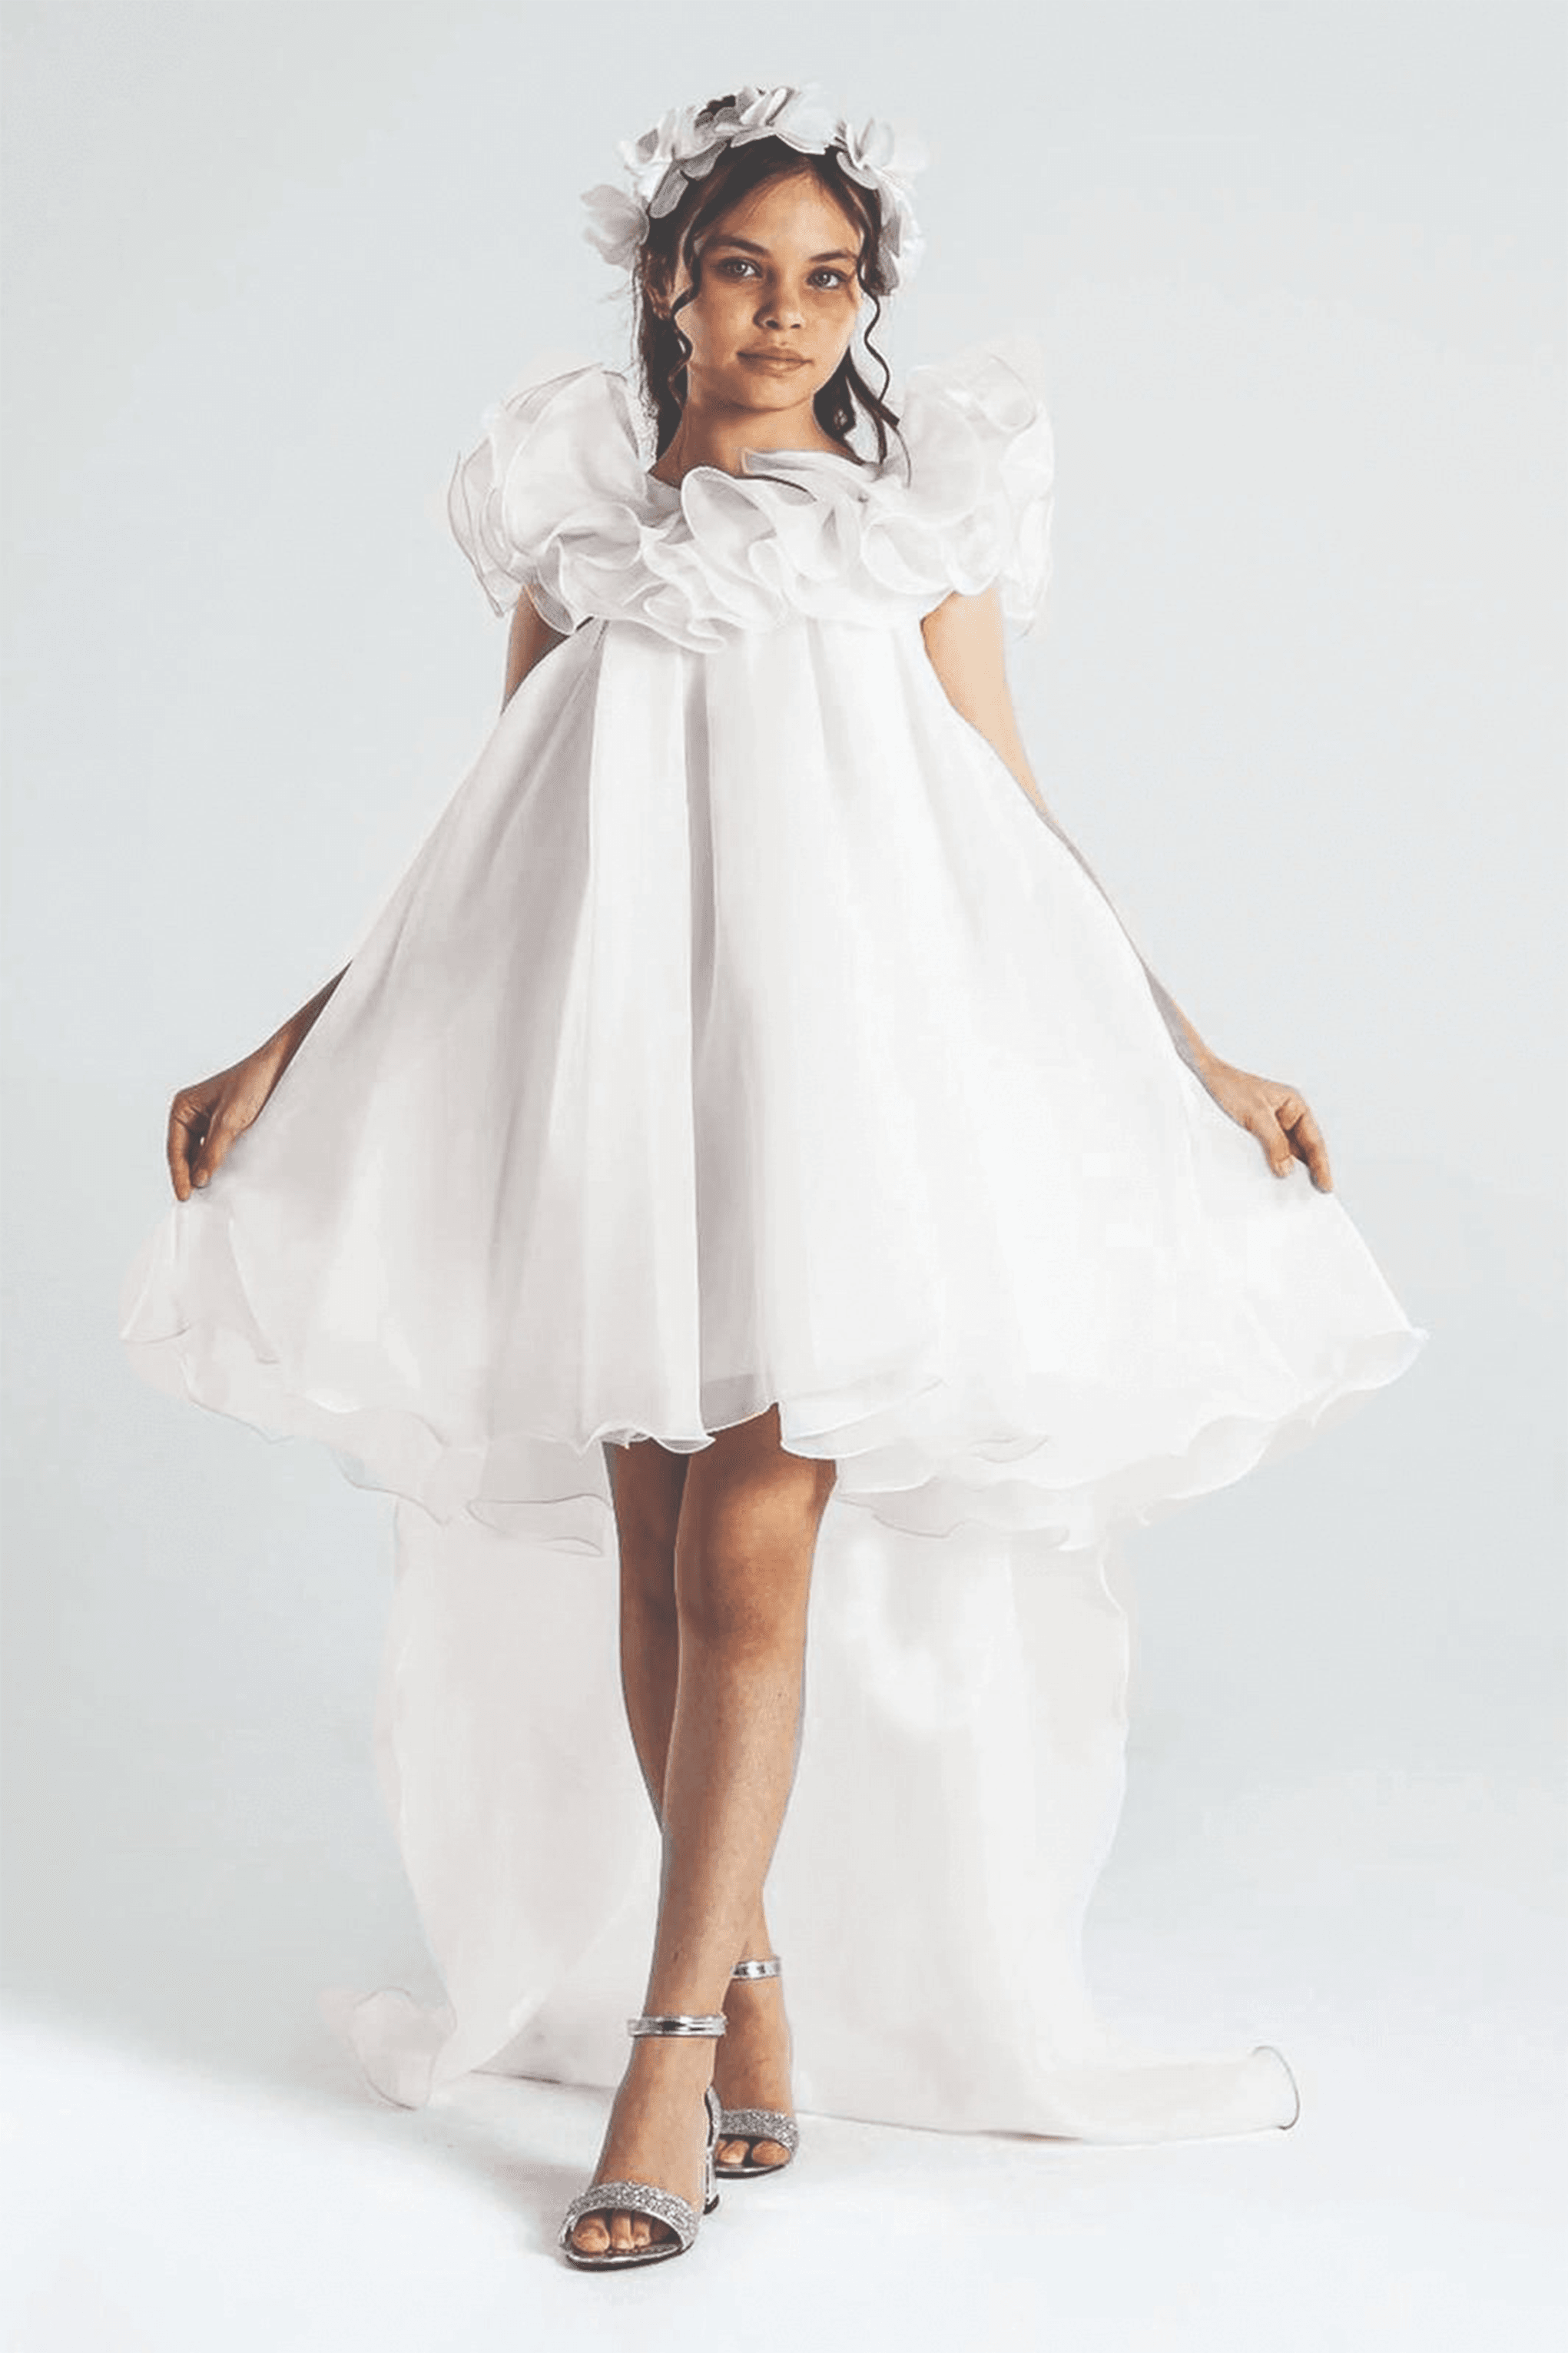 Çocuk Abiye - Bahar Rüyası Prenses Elbisesi - 6-10 Yaş - Beyaz